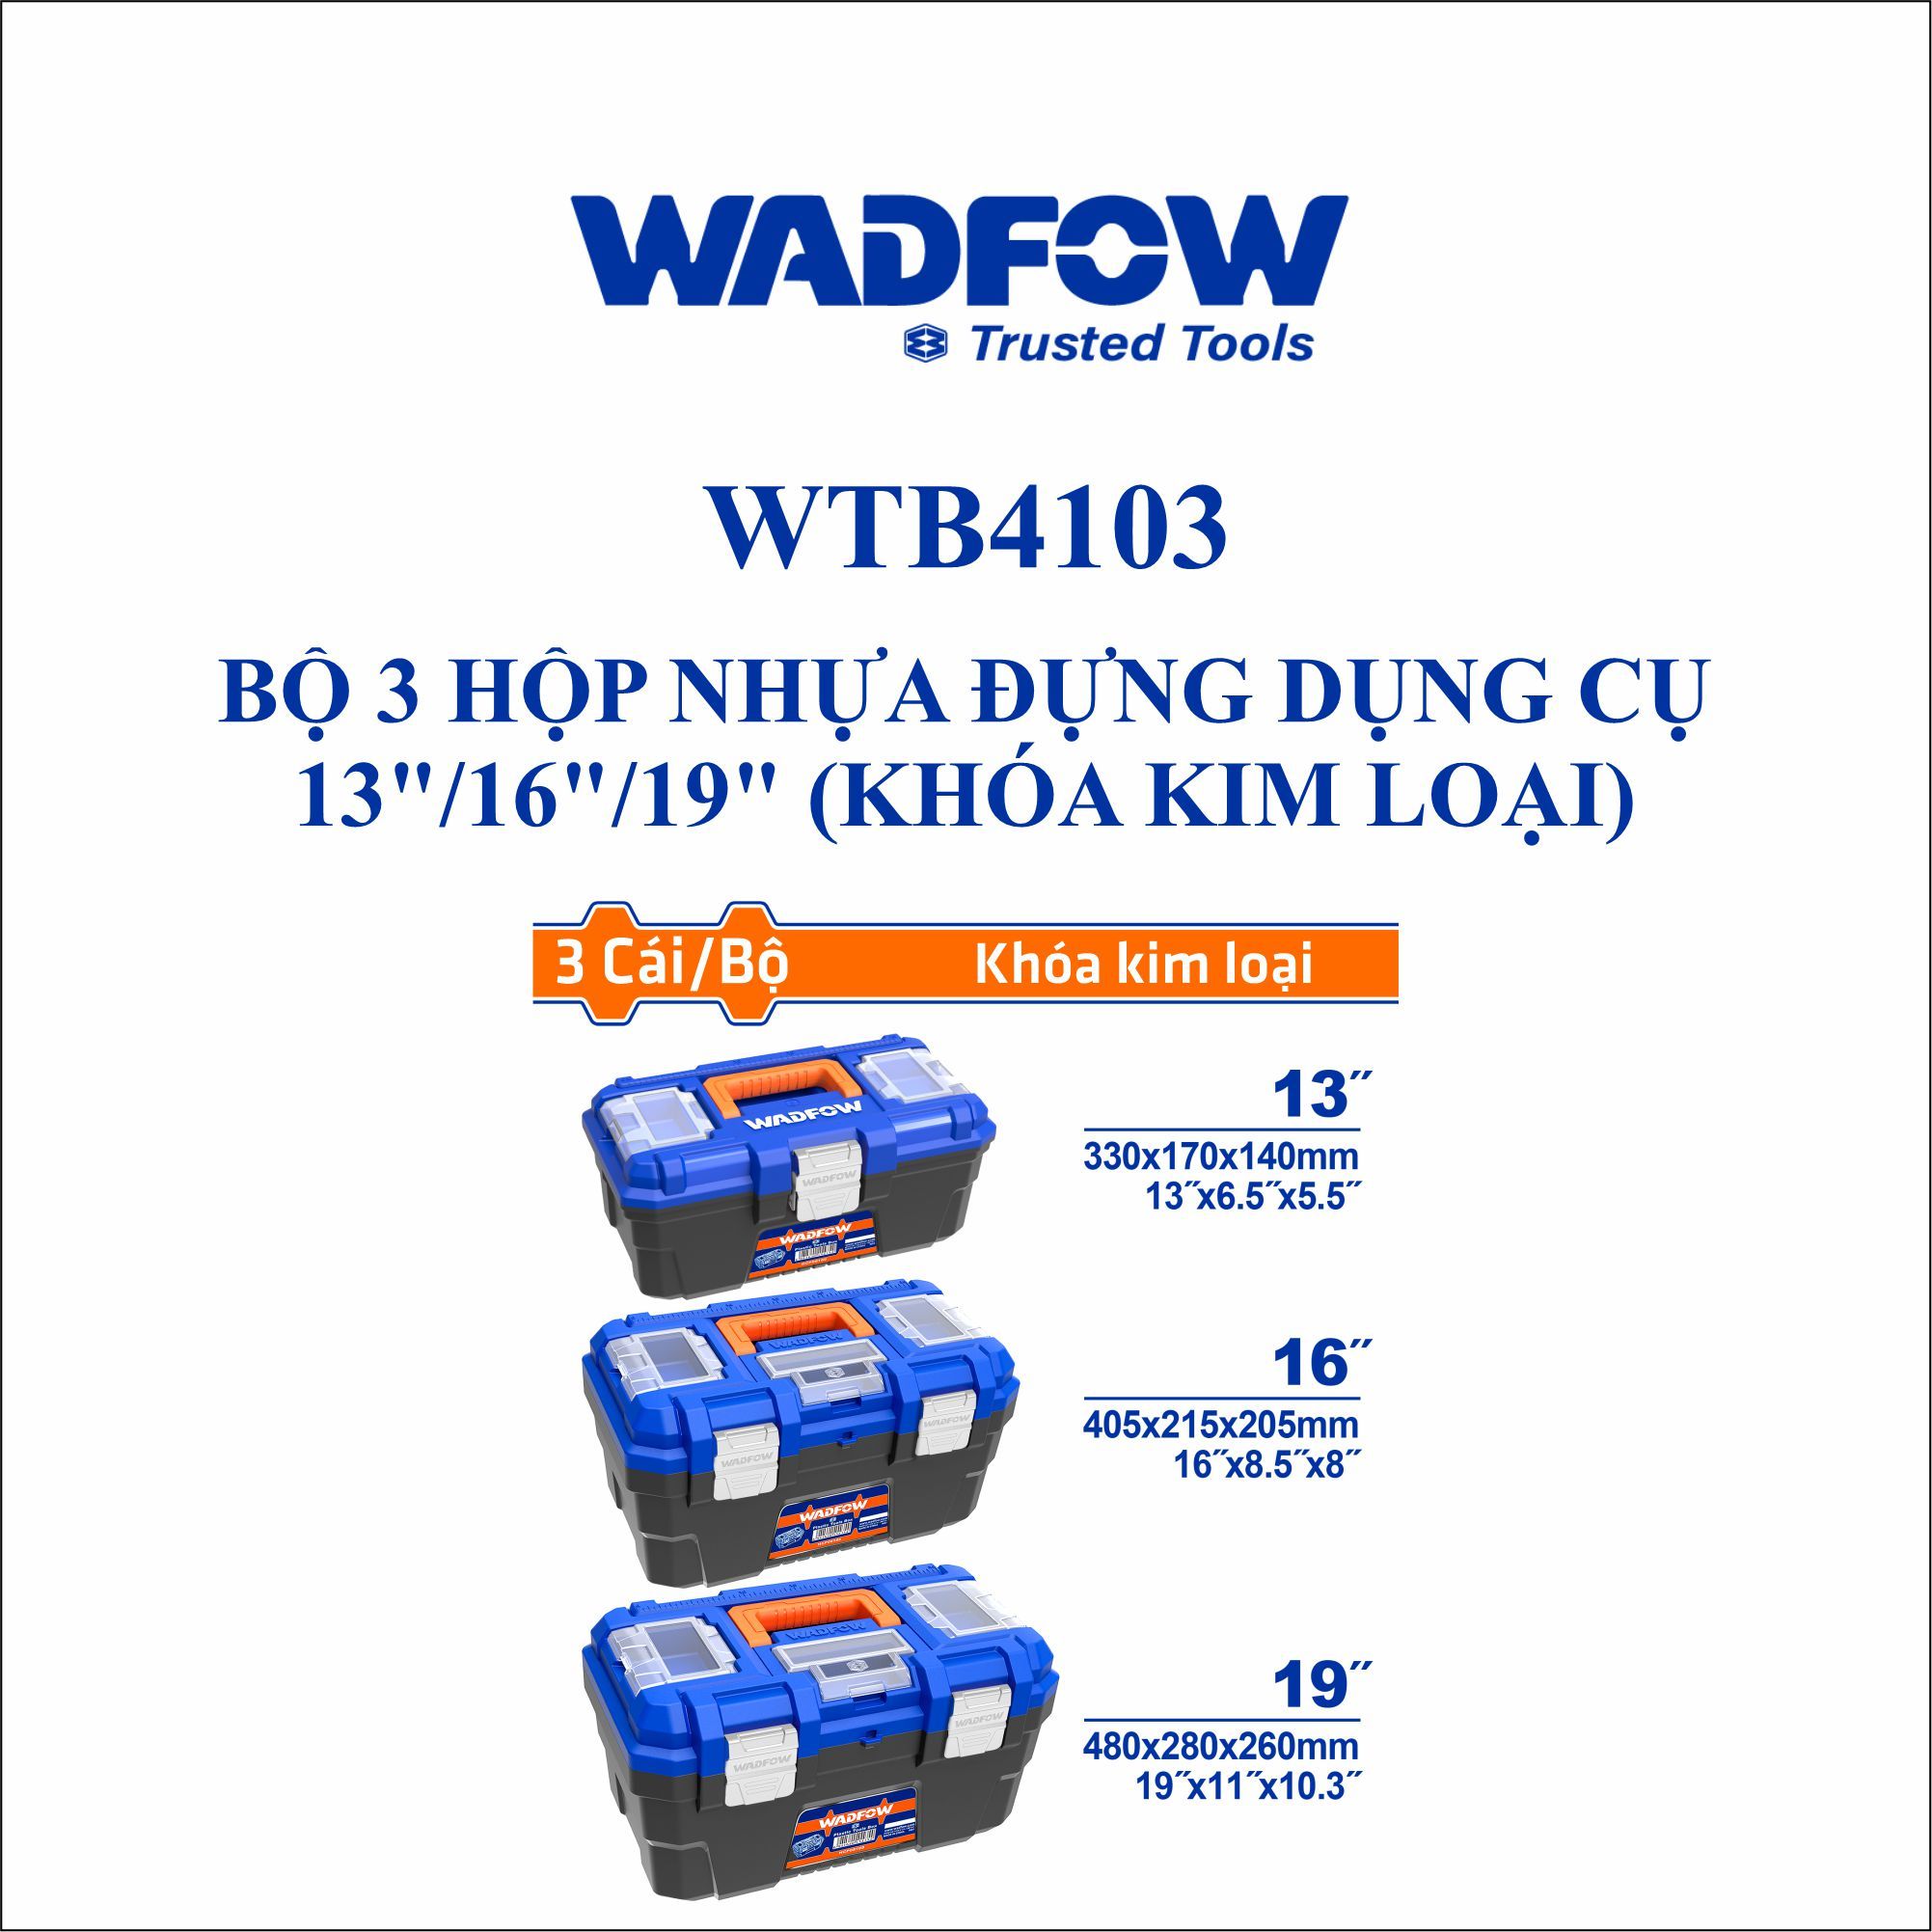  Bộ 3 hộp nhựa đựng dụng cụ WADFOW WTB4103 